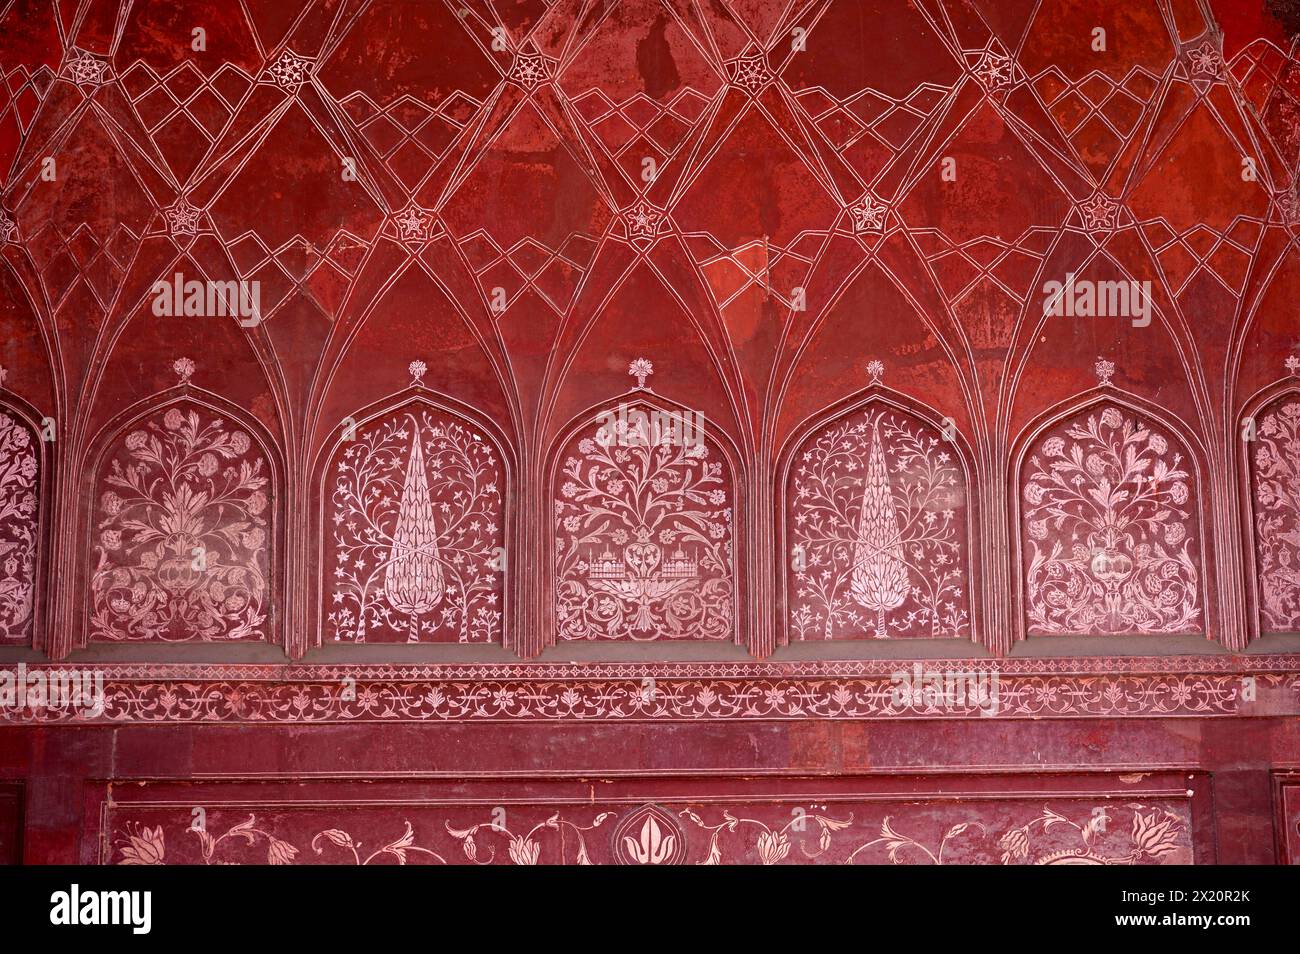 Peintures sur le mur intérieur de la mosquée Jawab Masjid ou Taj Mahal dans le complexe Taj Mahal, Agra, Uttar Pradesh, Inde Banque D'Images